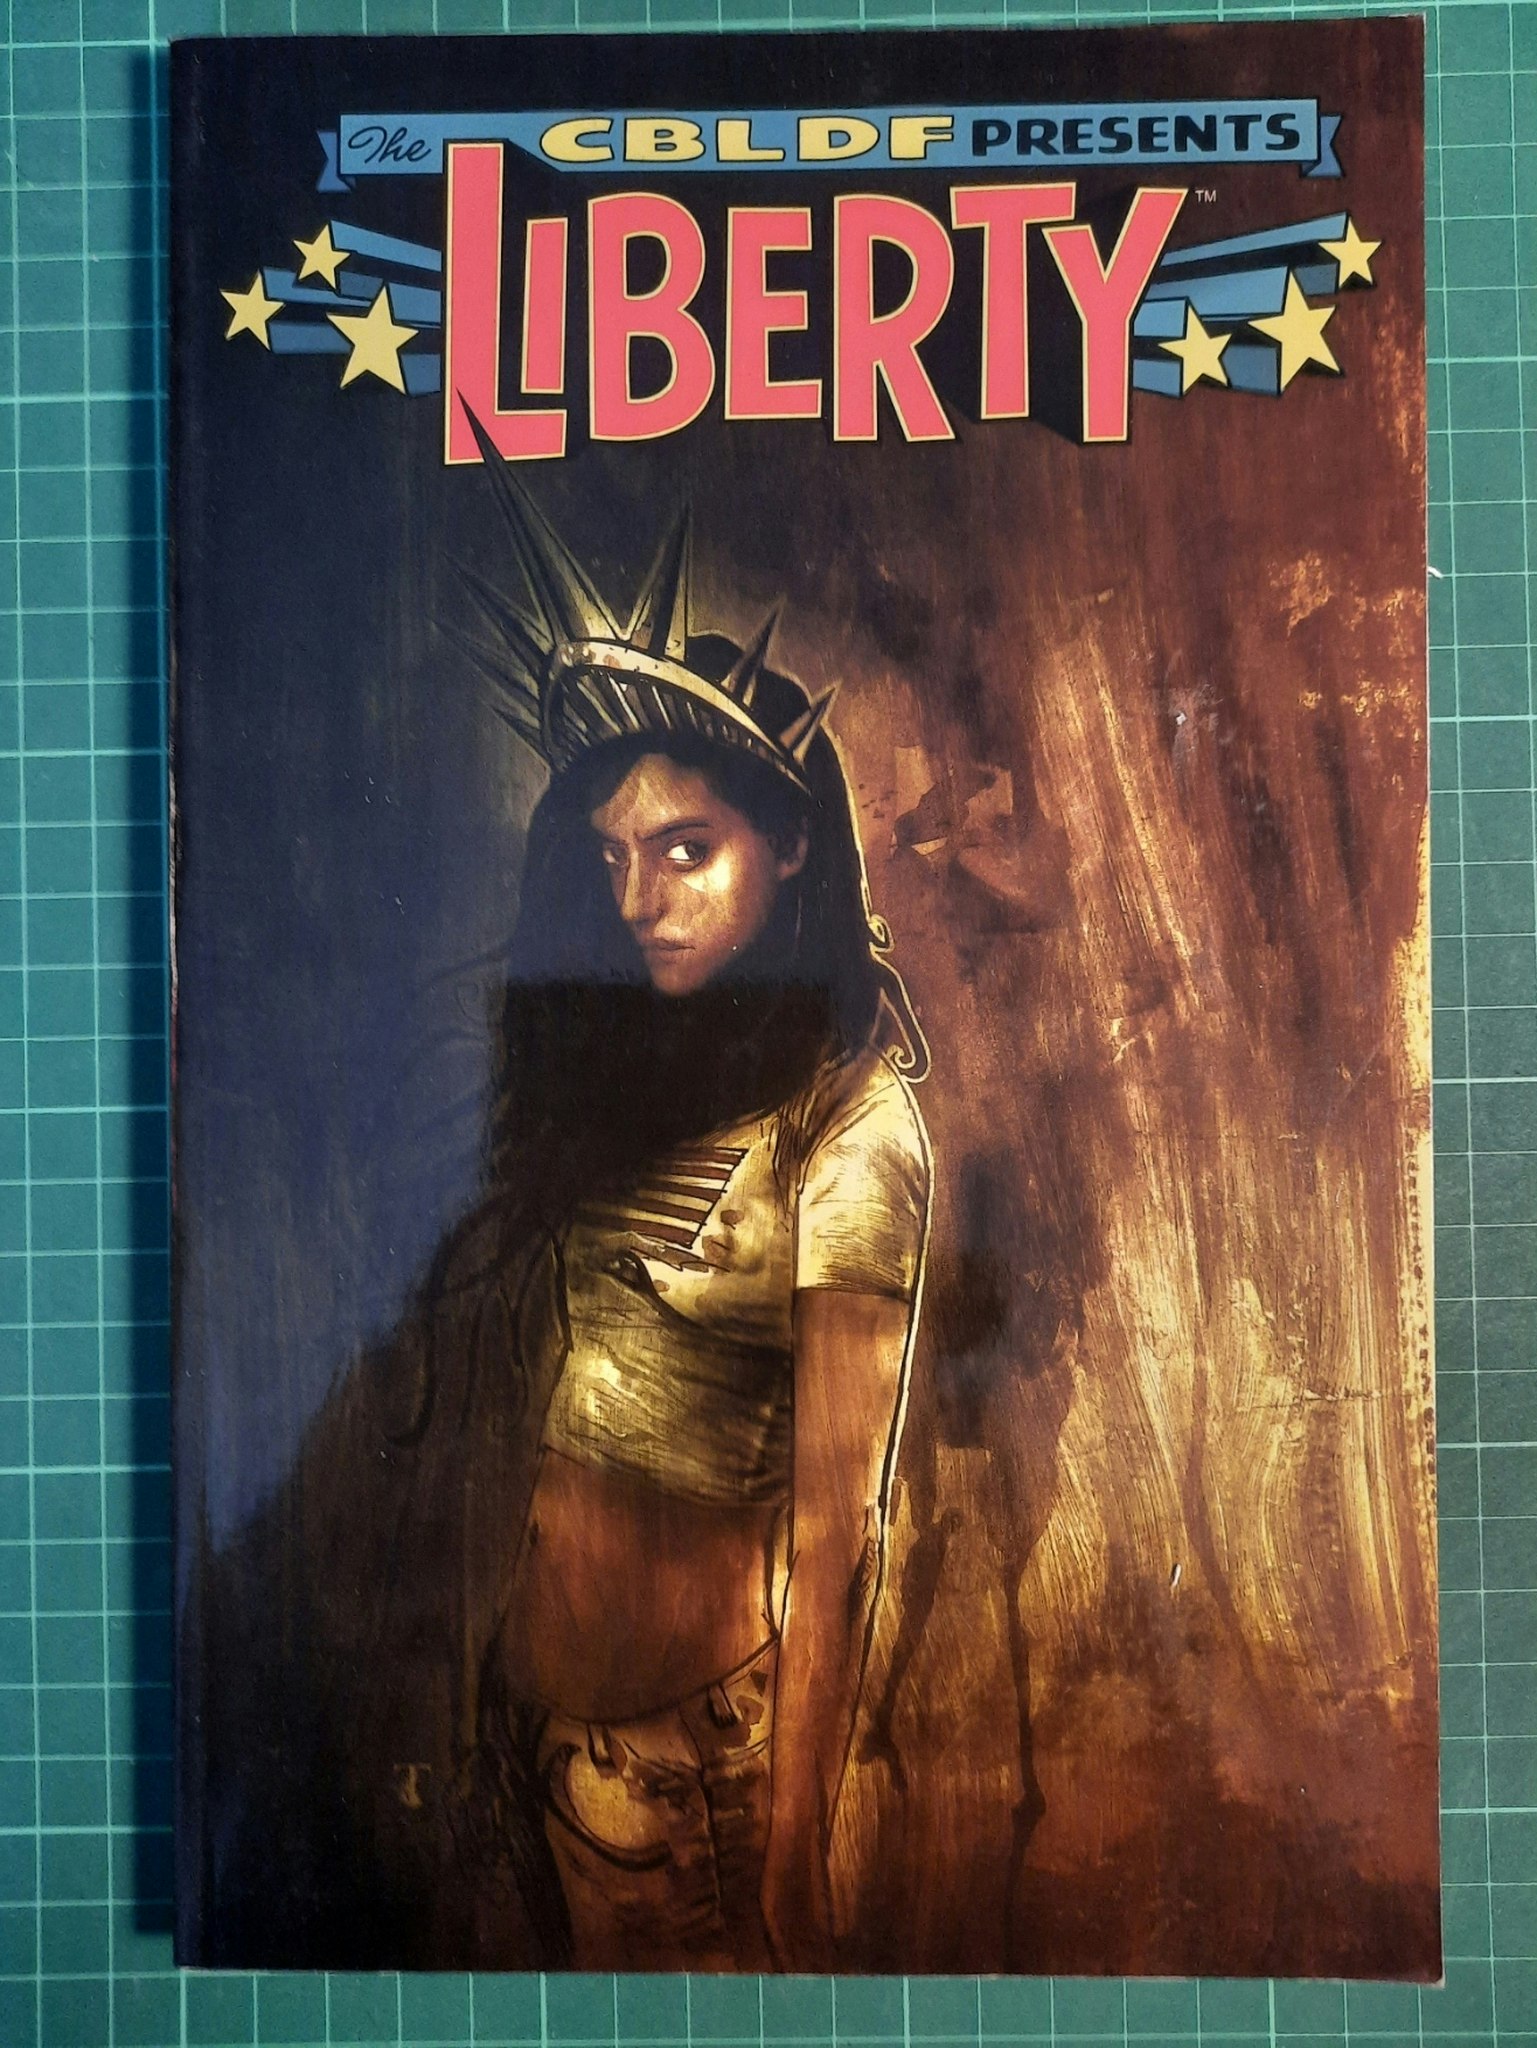 CBLDF presents Liberty